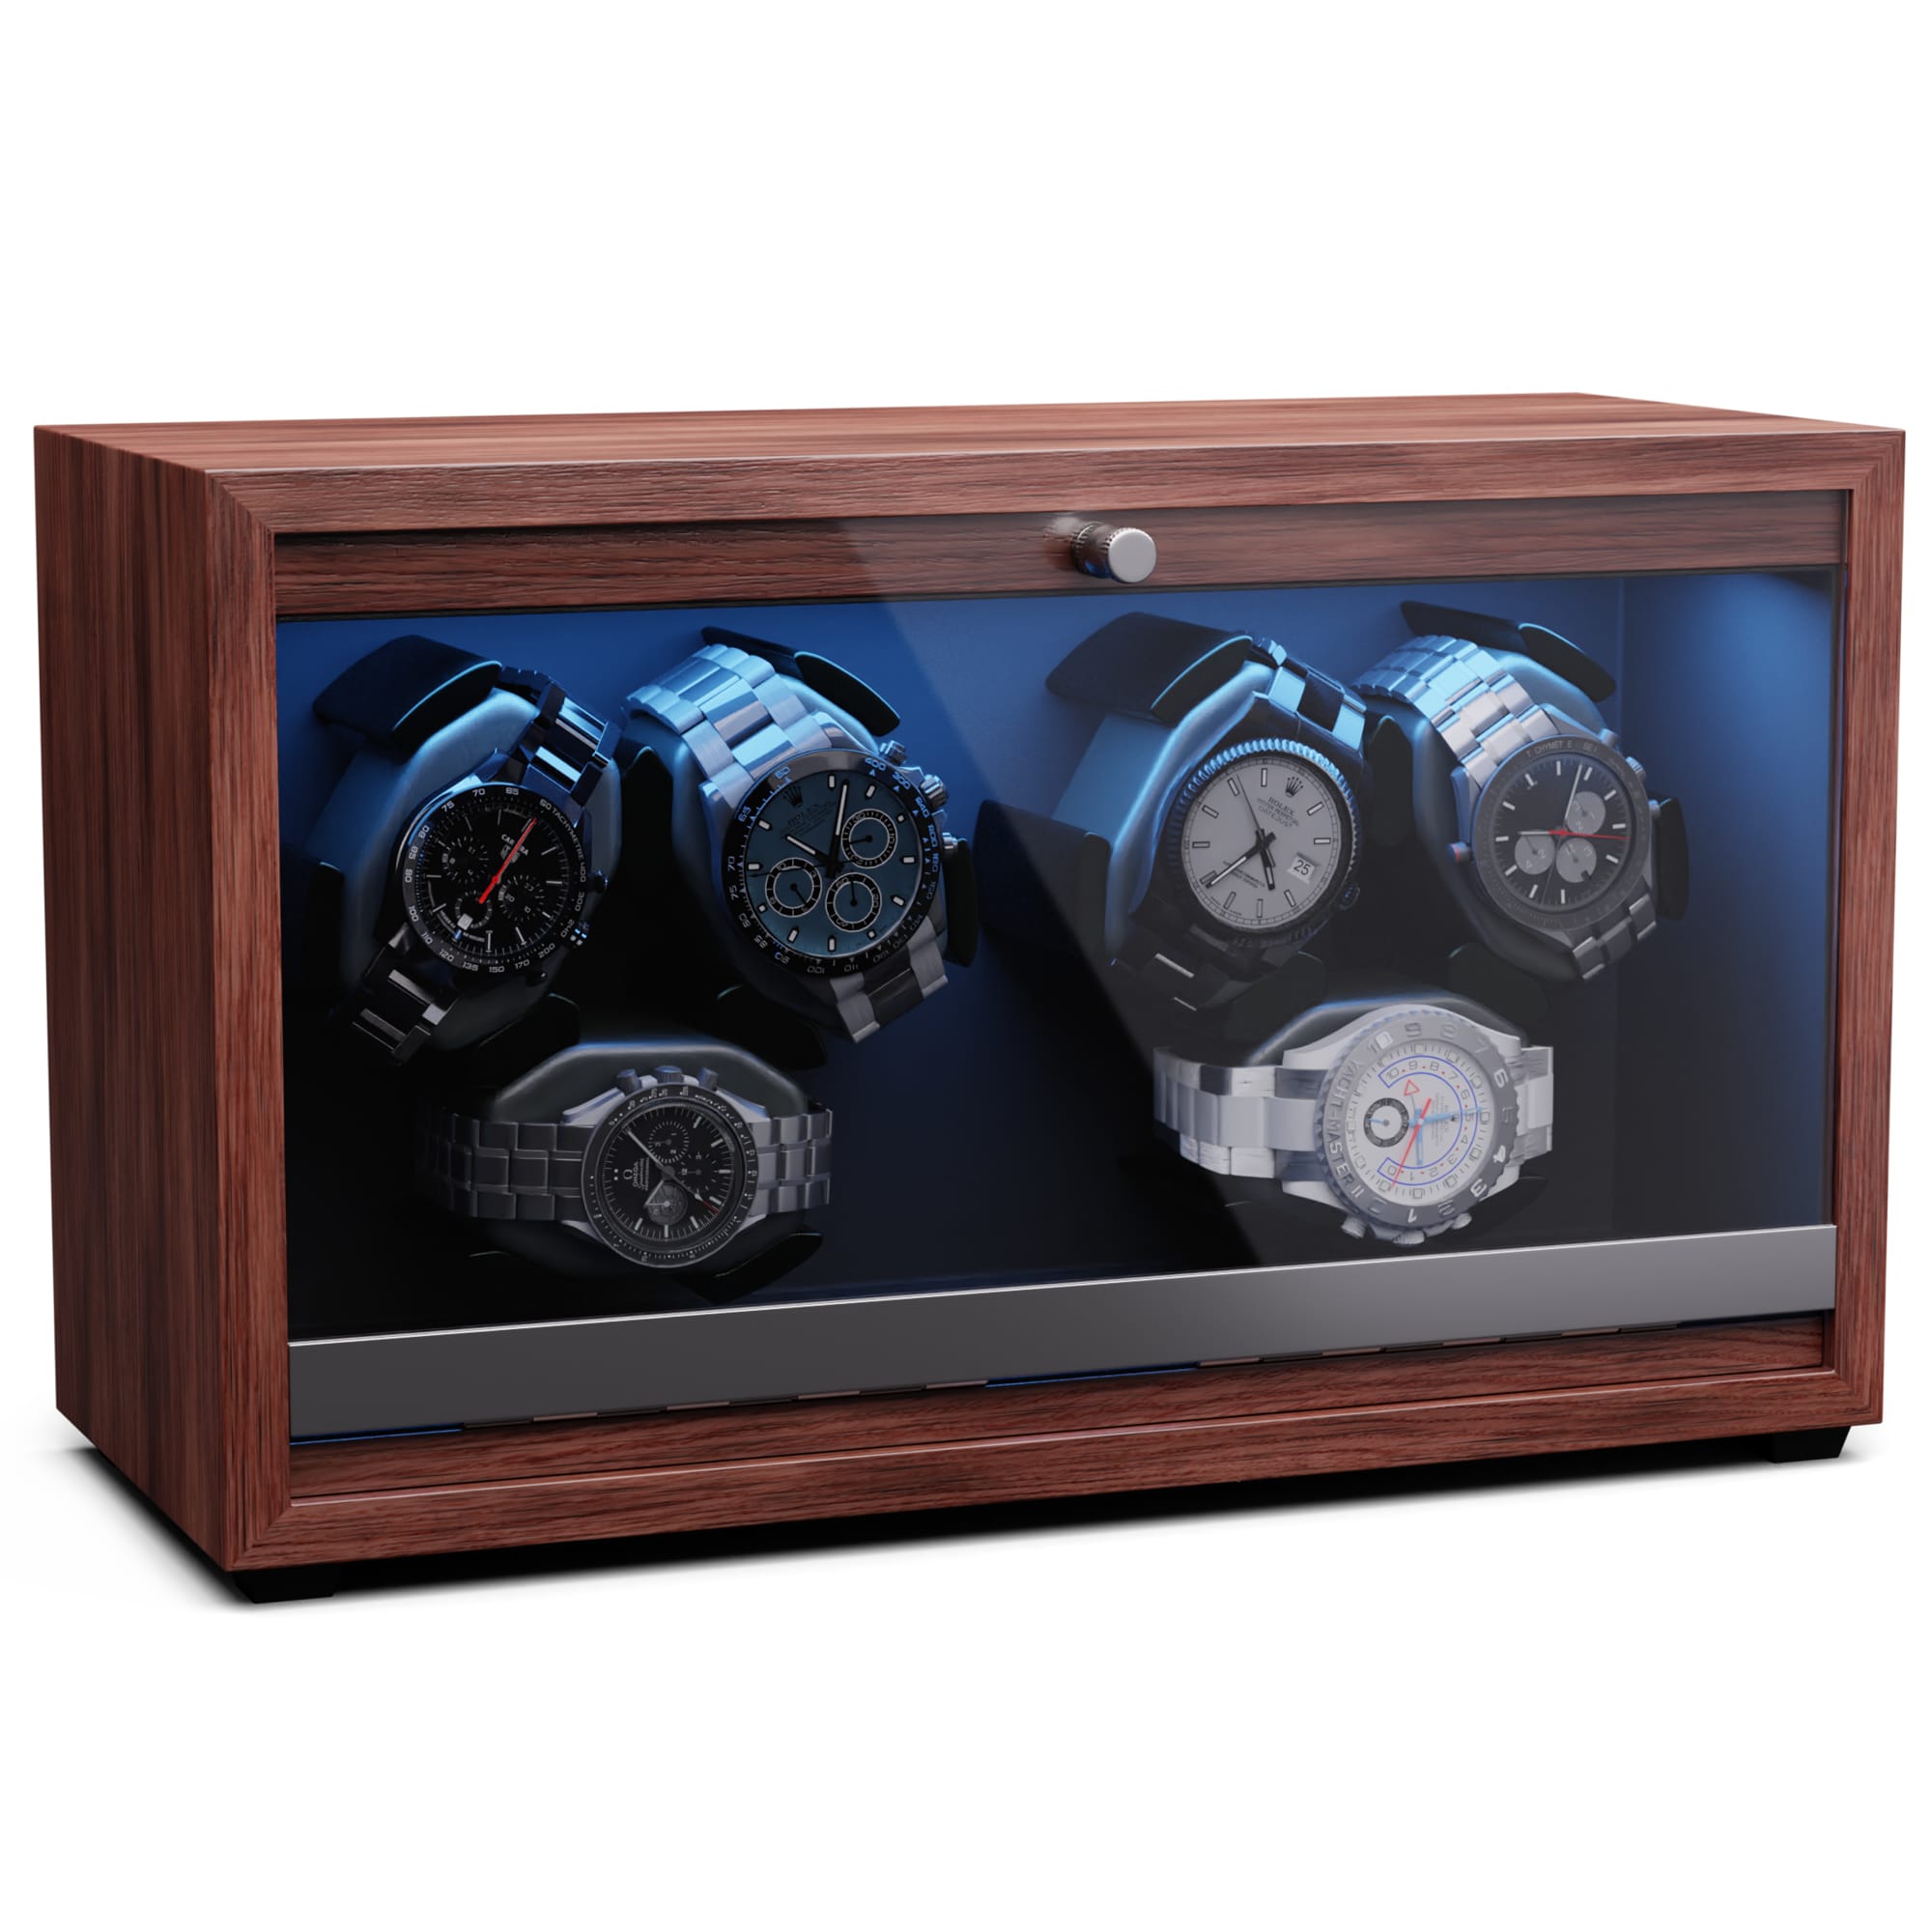 E-shop Klarstein Brienz 6, naťahovač hodiniek, 6 hodiniek, 4 režimy, drevený vzhľad, modré vnútorné osvetlenie